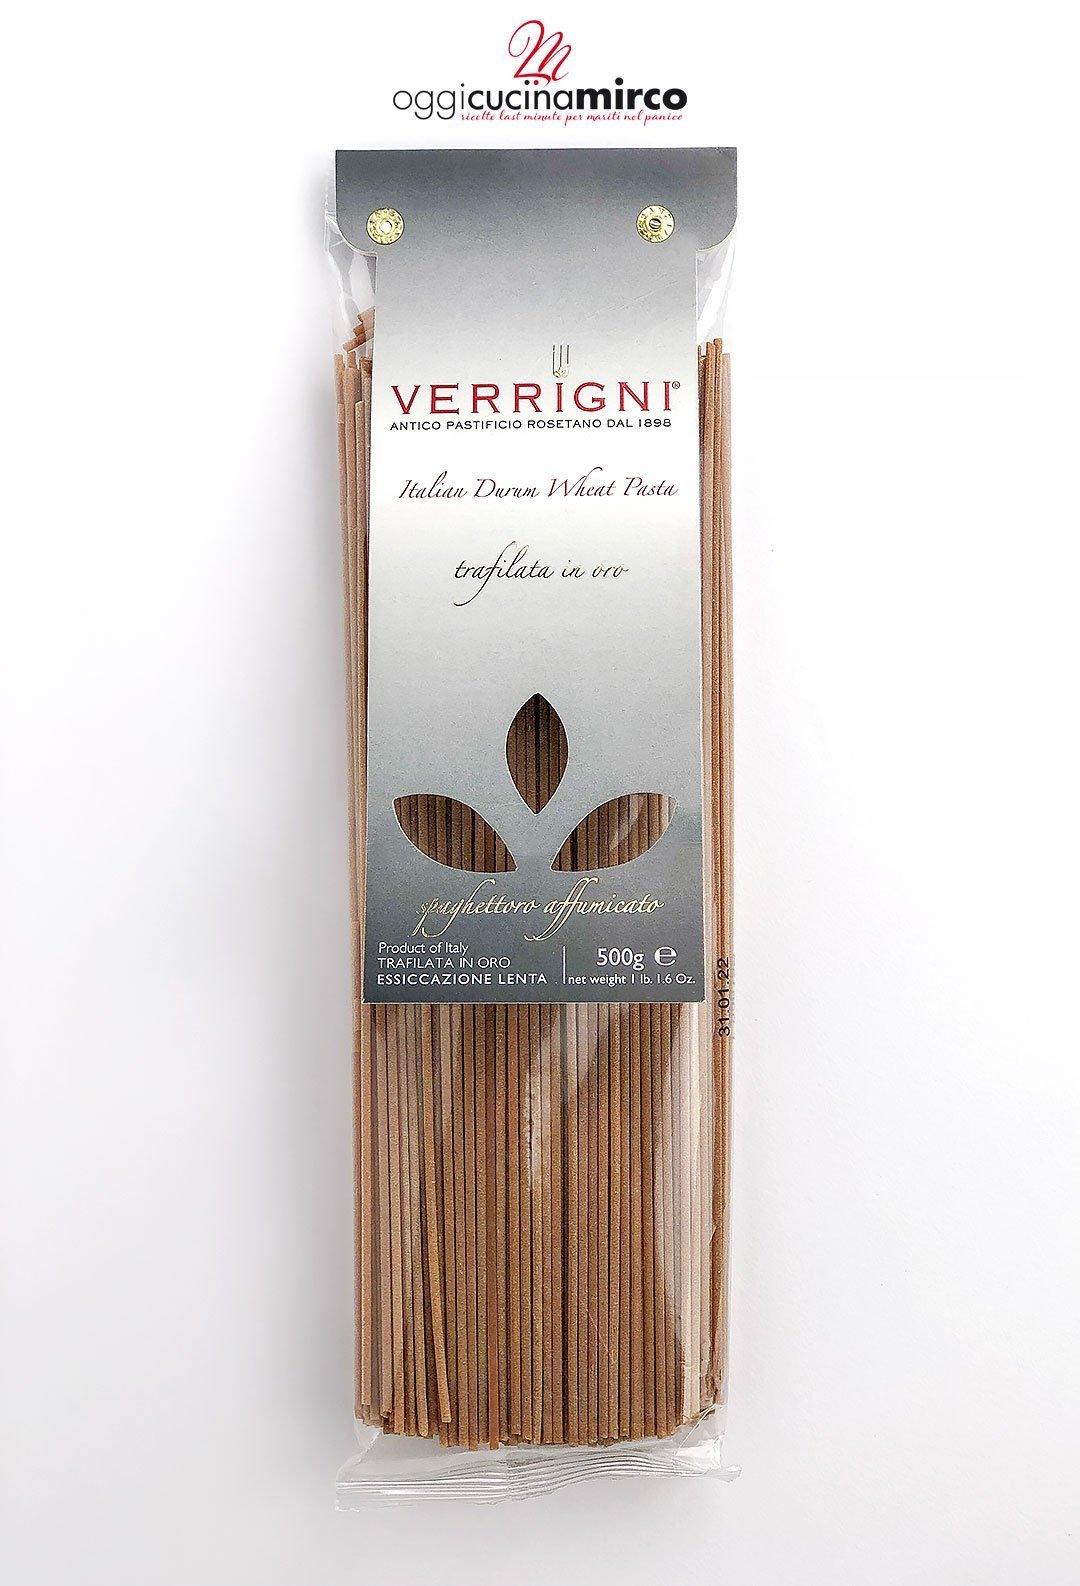 Confezione di spaghettoro affumicato Verrigni